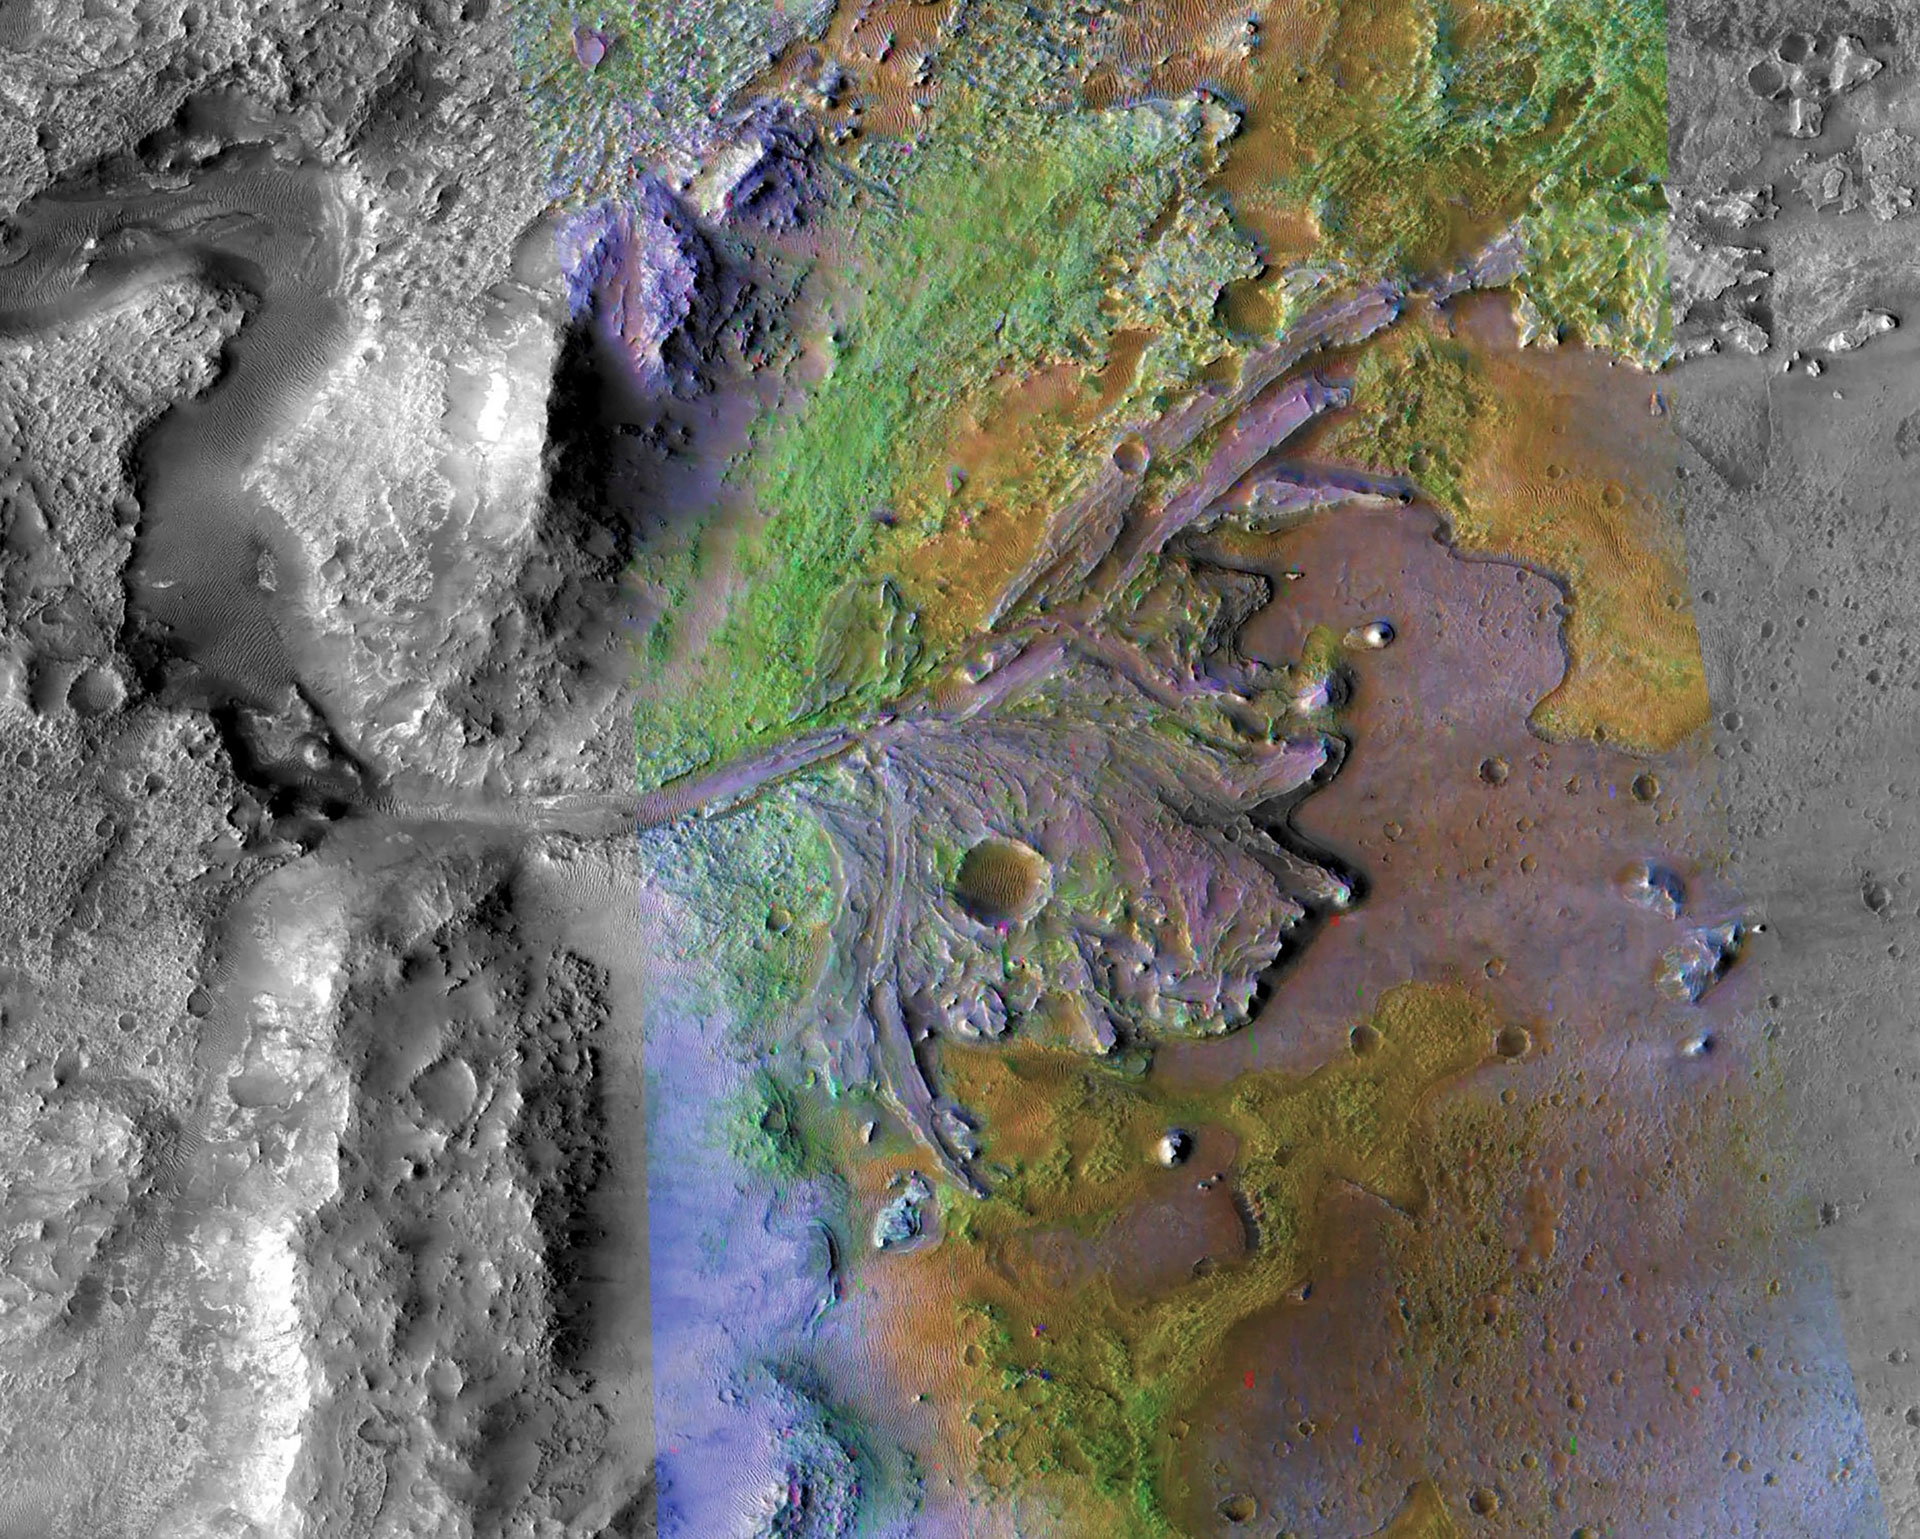 Узбуђење због проналаска живота на Марсу порасло је након открића радара који продире у земљу од стране ровера Персеверанце